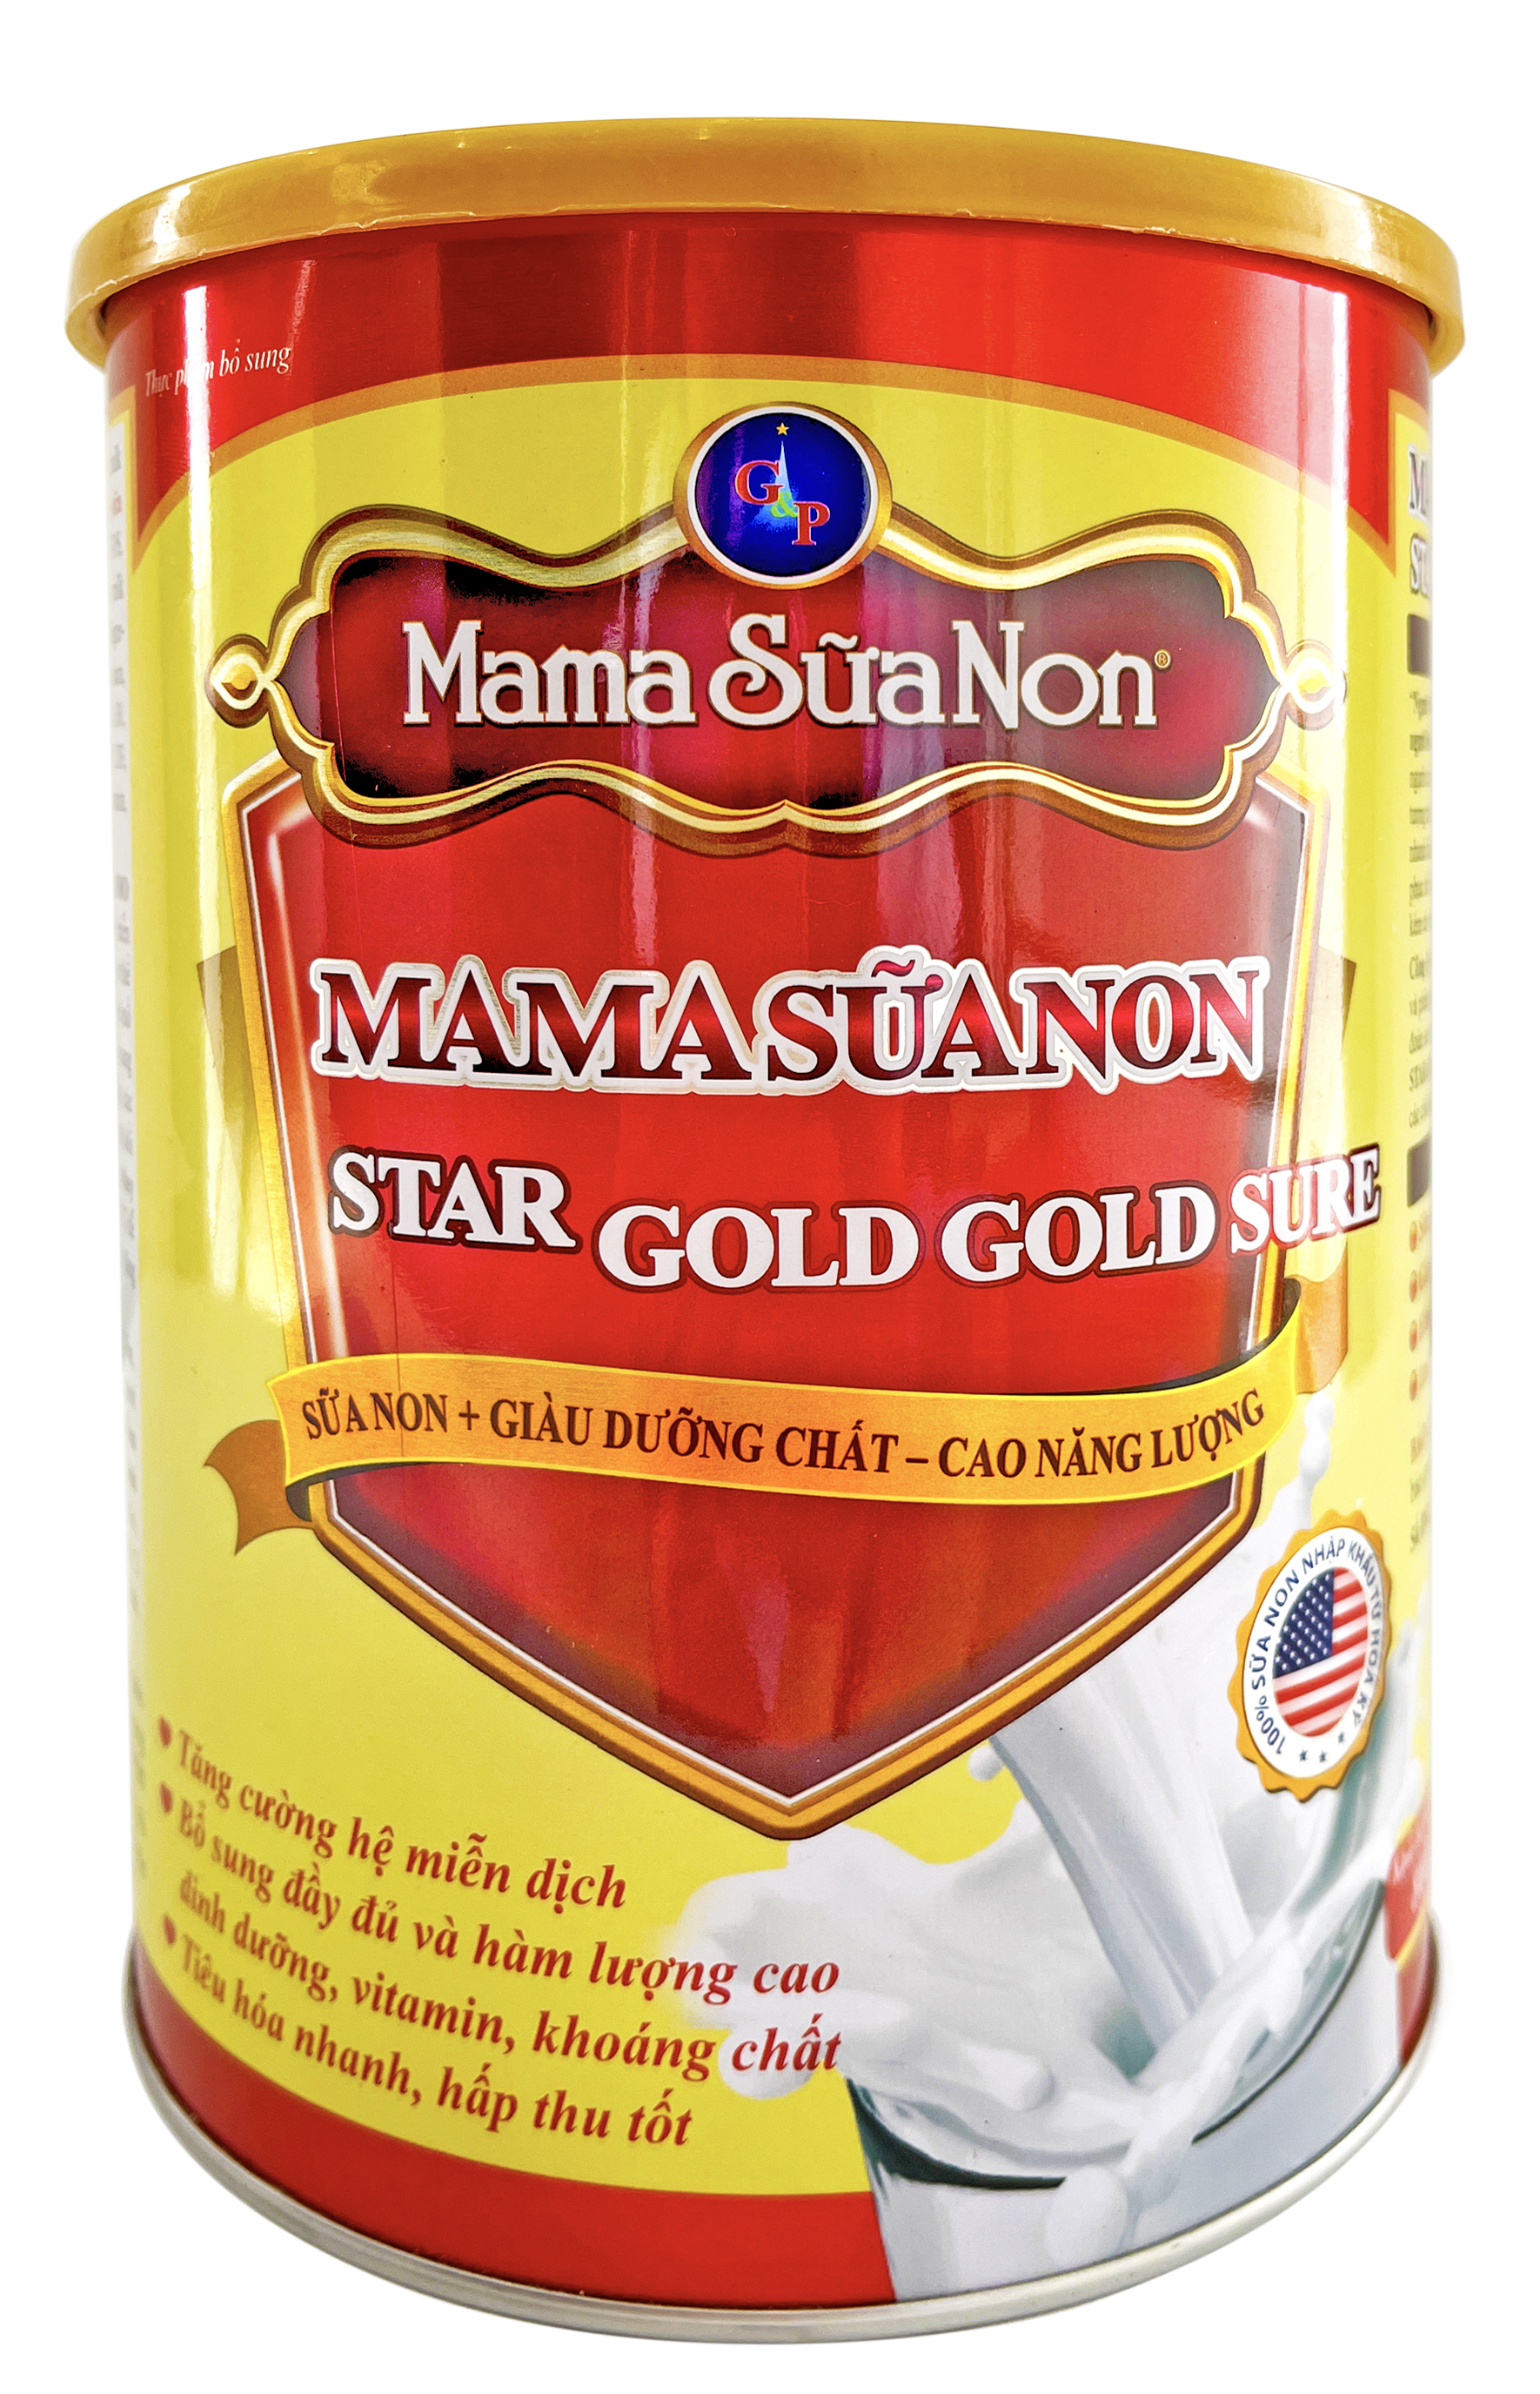 MAMA SỮA NON STAR GOLD GOLD SURE